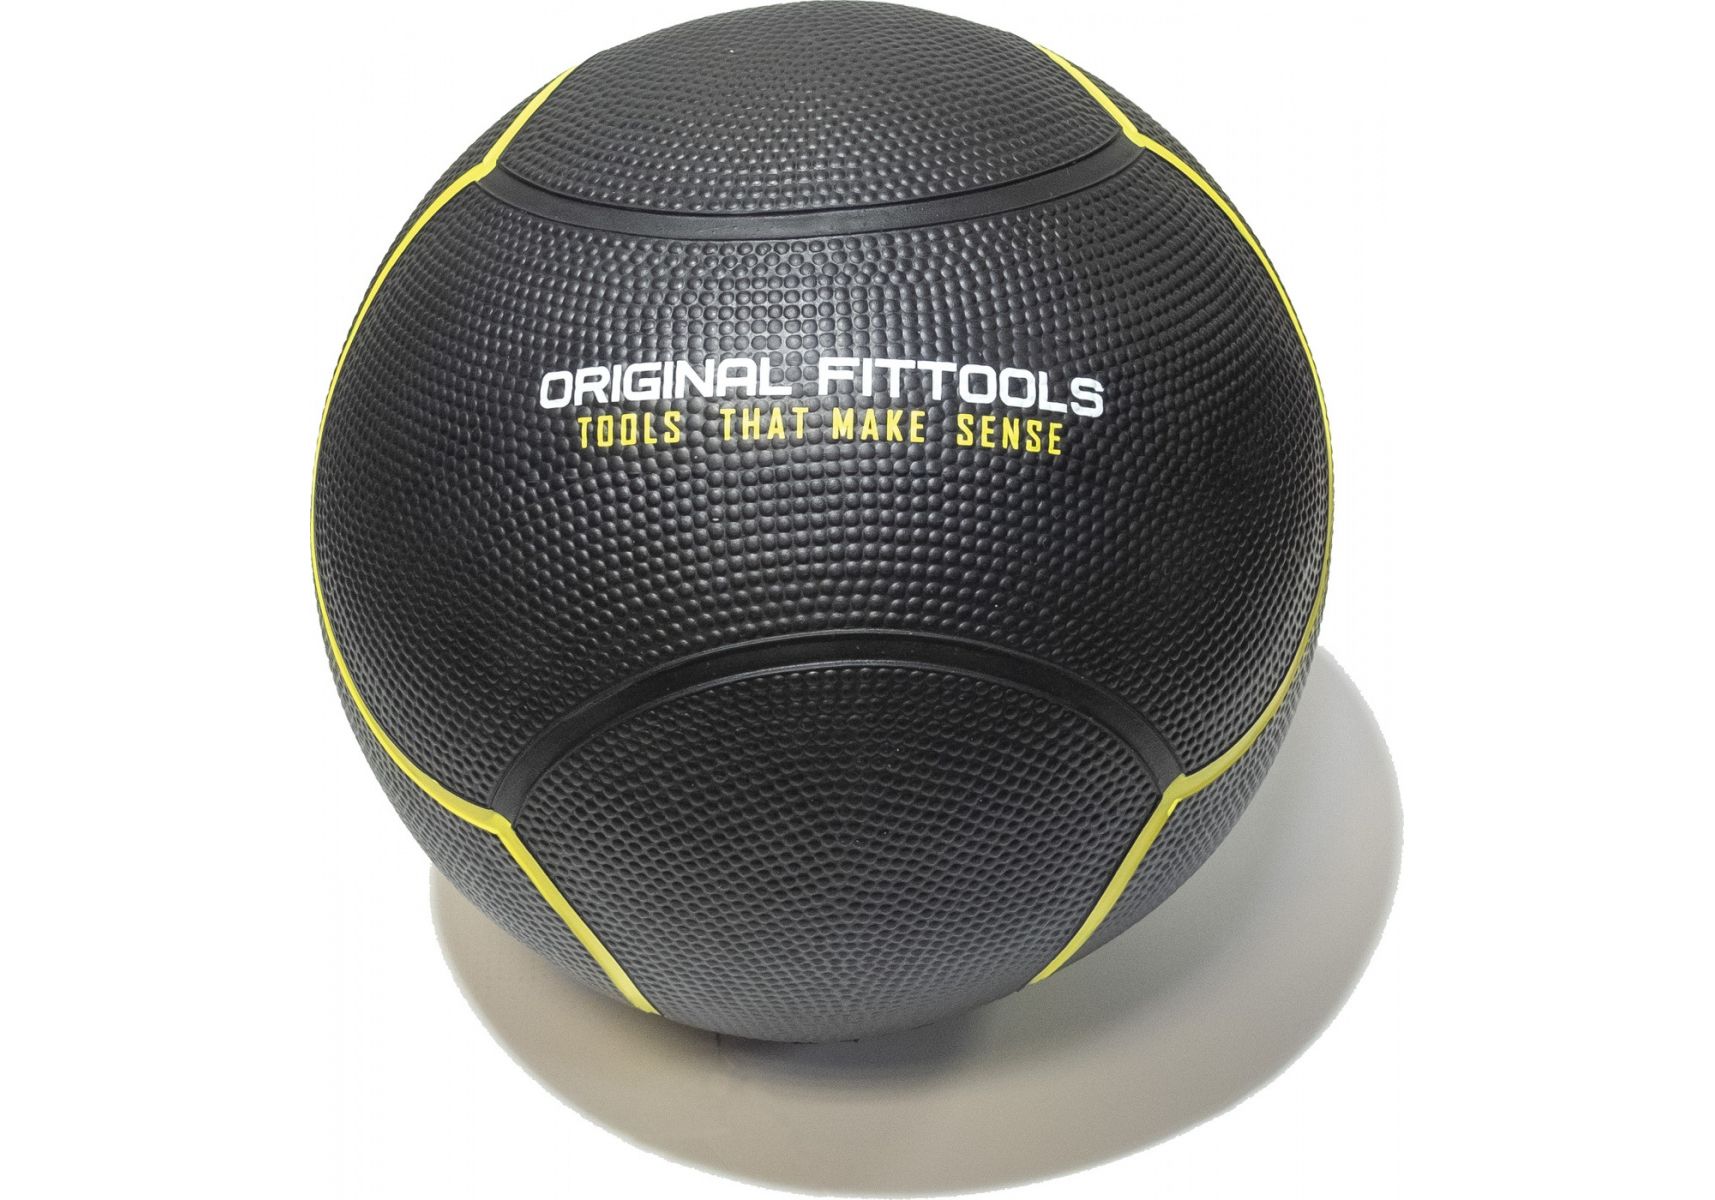 фото Original fittools мяч тренировочный черный 1 кг original fittools ft-ubmb-1 original fit.tools